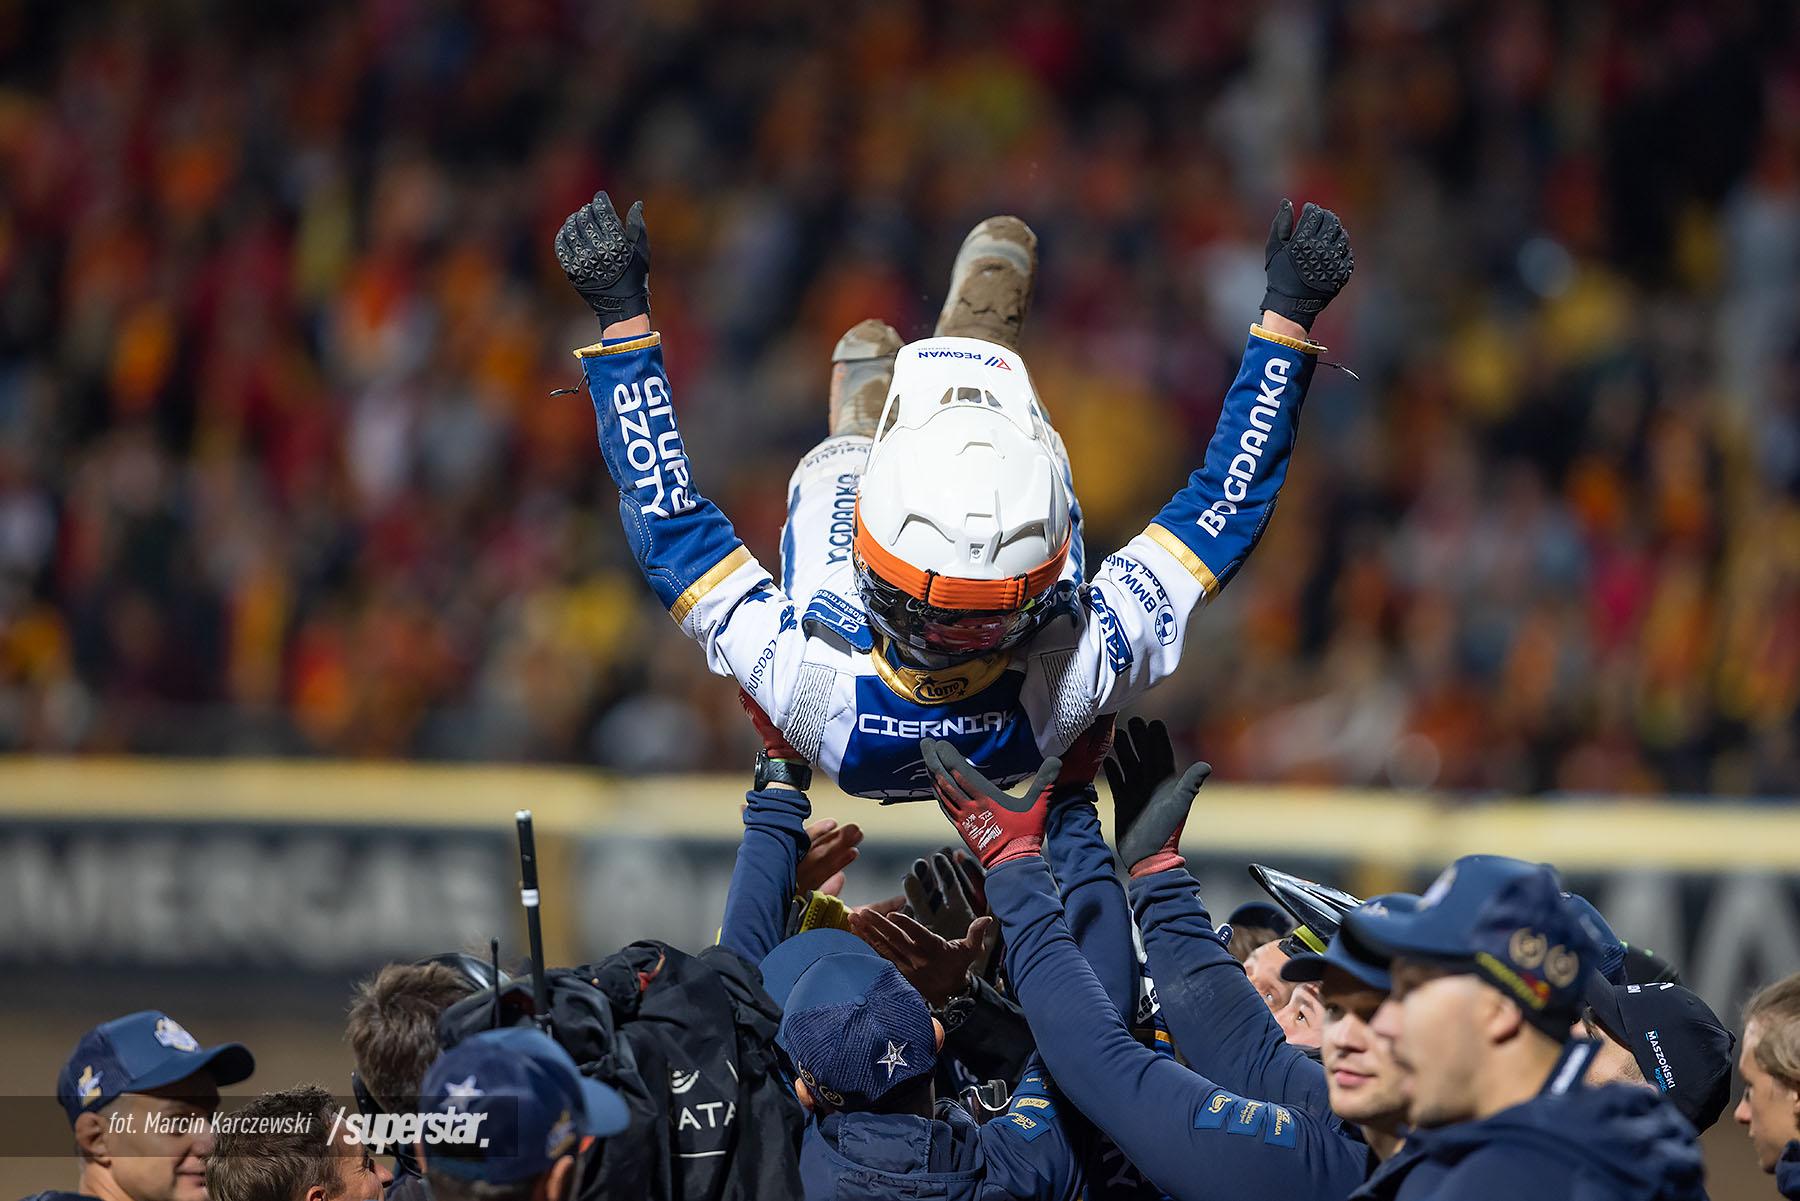 Red Bull Juniorskie Asy: Mateusz Cierniak wygrywa klasyfikację punktową